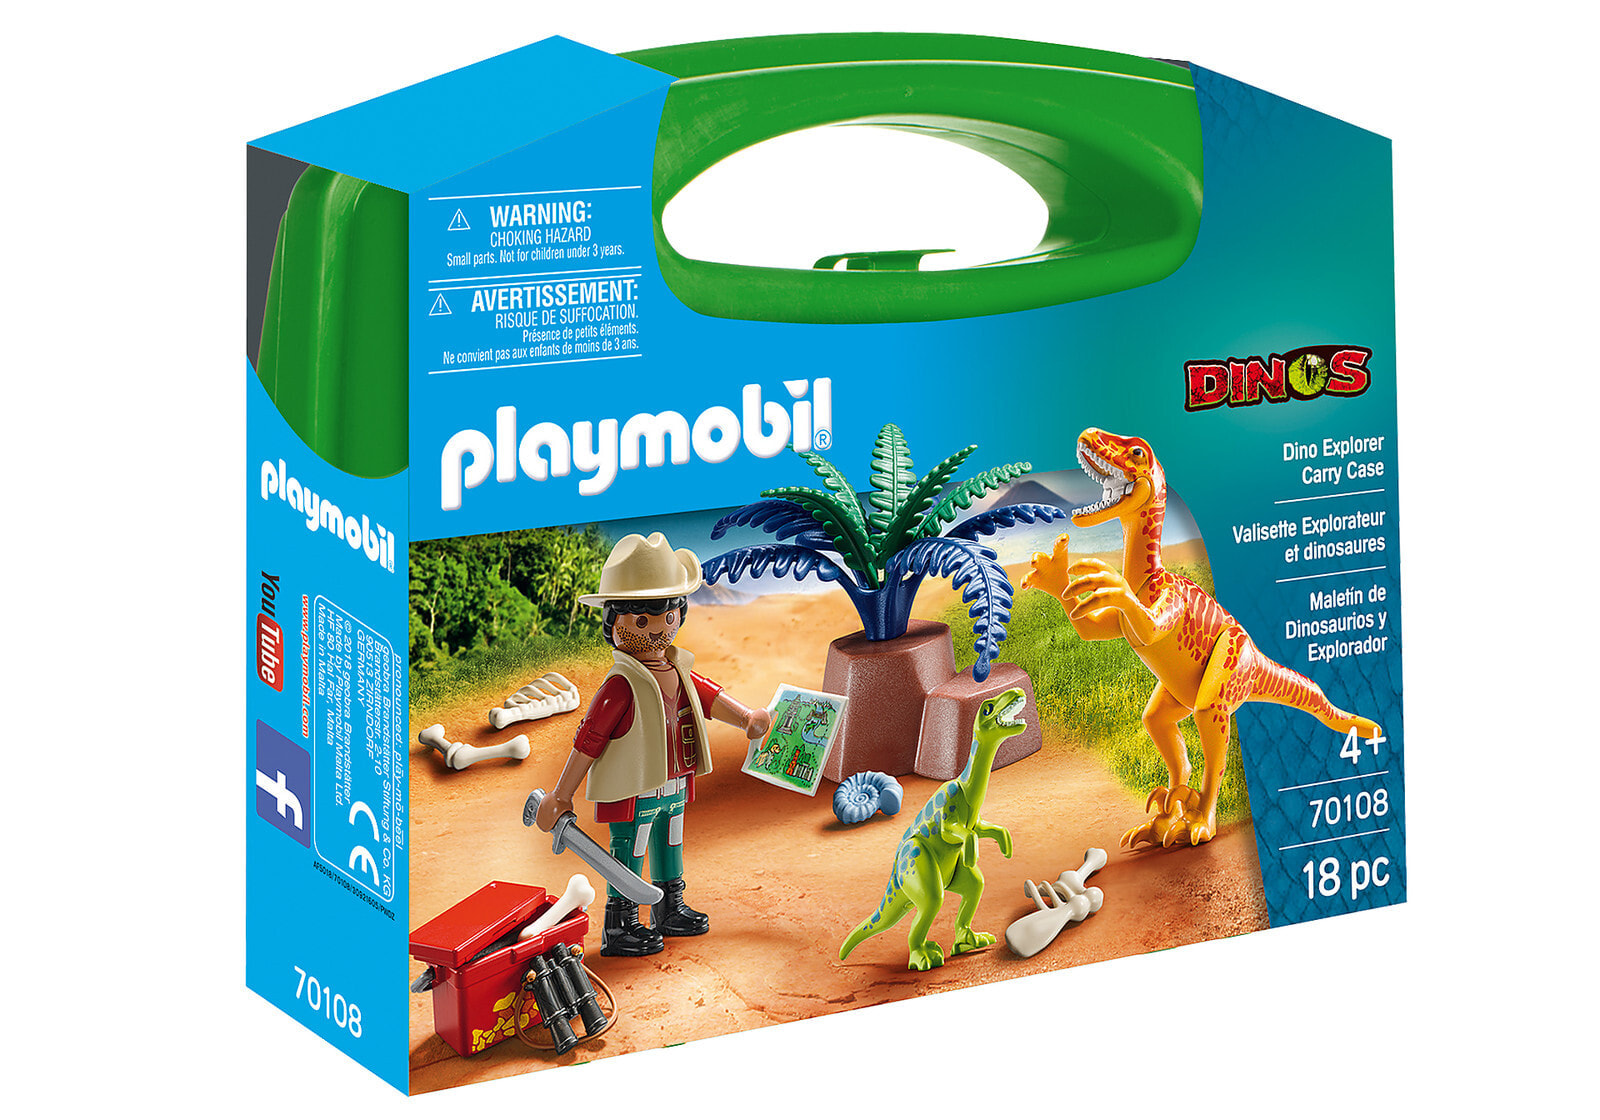 Детский игровой набор и фигурка из дерева geobra Brandstätter GmbH & Co. KG Playmobil Dinos Dino Explorer Carry Case, 1 pc(s), Boy/Girl, 4 yr(s), Plastic, Multicolour